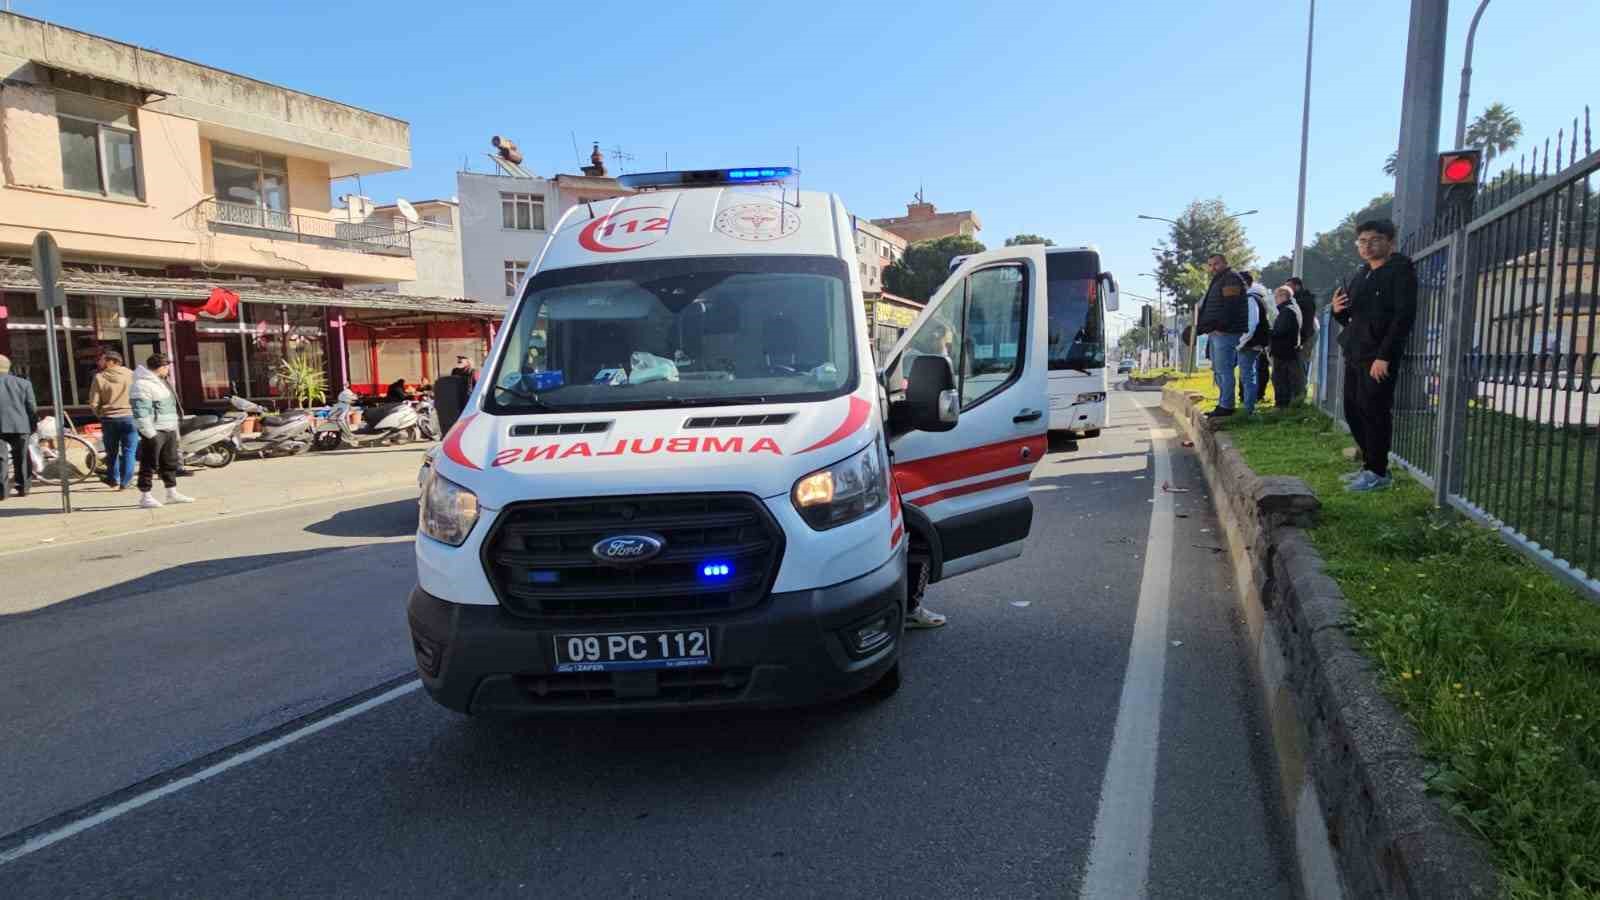 Nazilli’de otobüs motosiklete çarptı: 1 ölü
